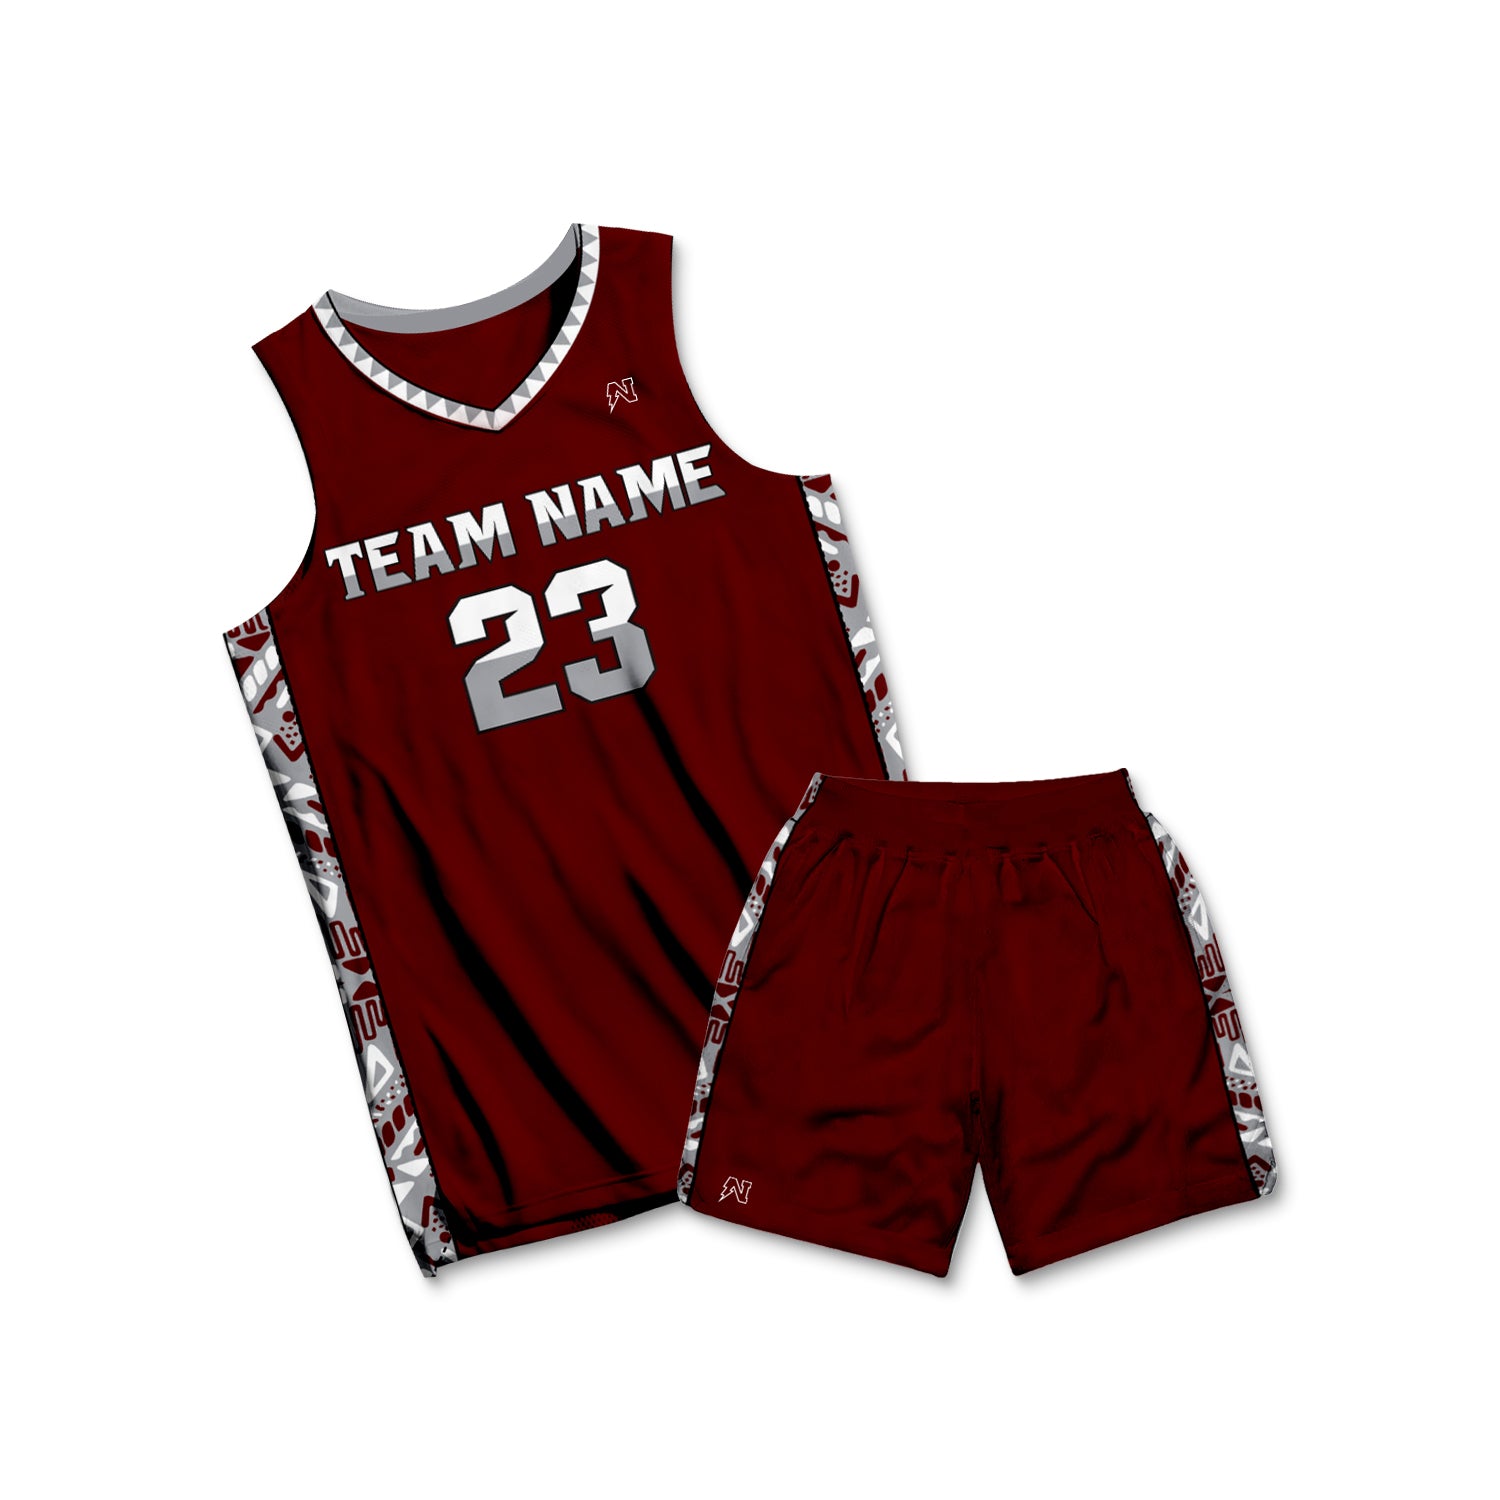 170 Uniforms NCAAM ideas  basketball uniforms, basketball jersey, basketball  uniforms design